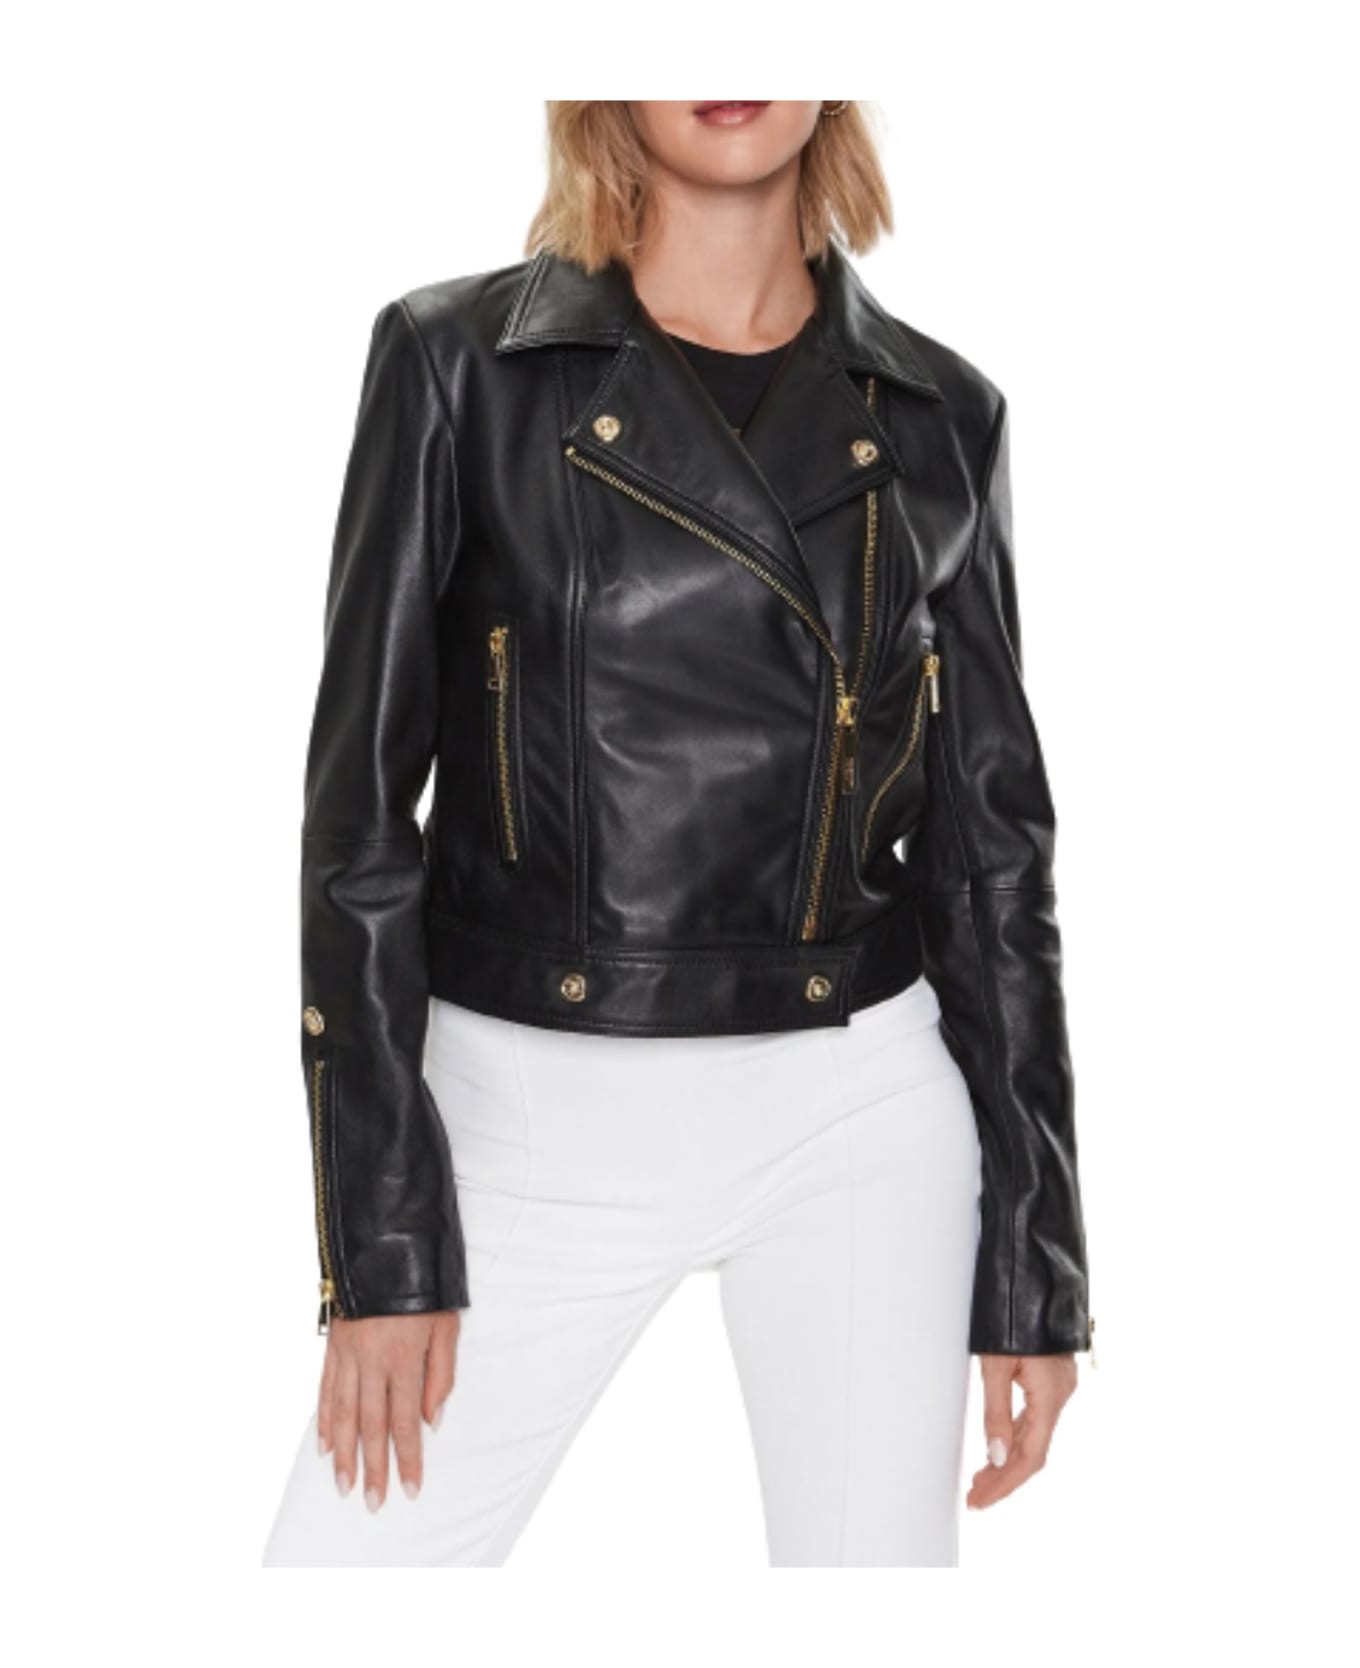 Just Cavalli Leather Jacket - Black